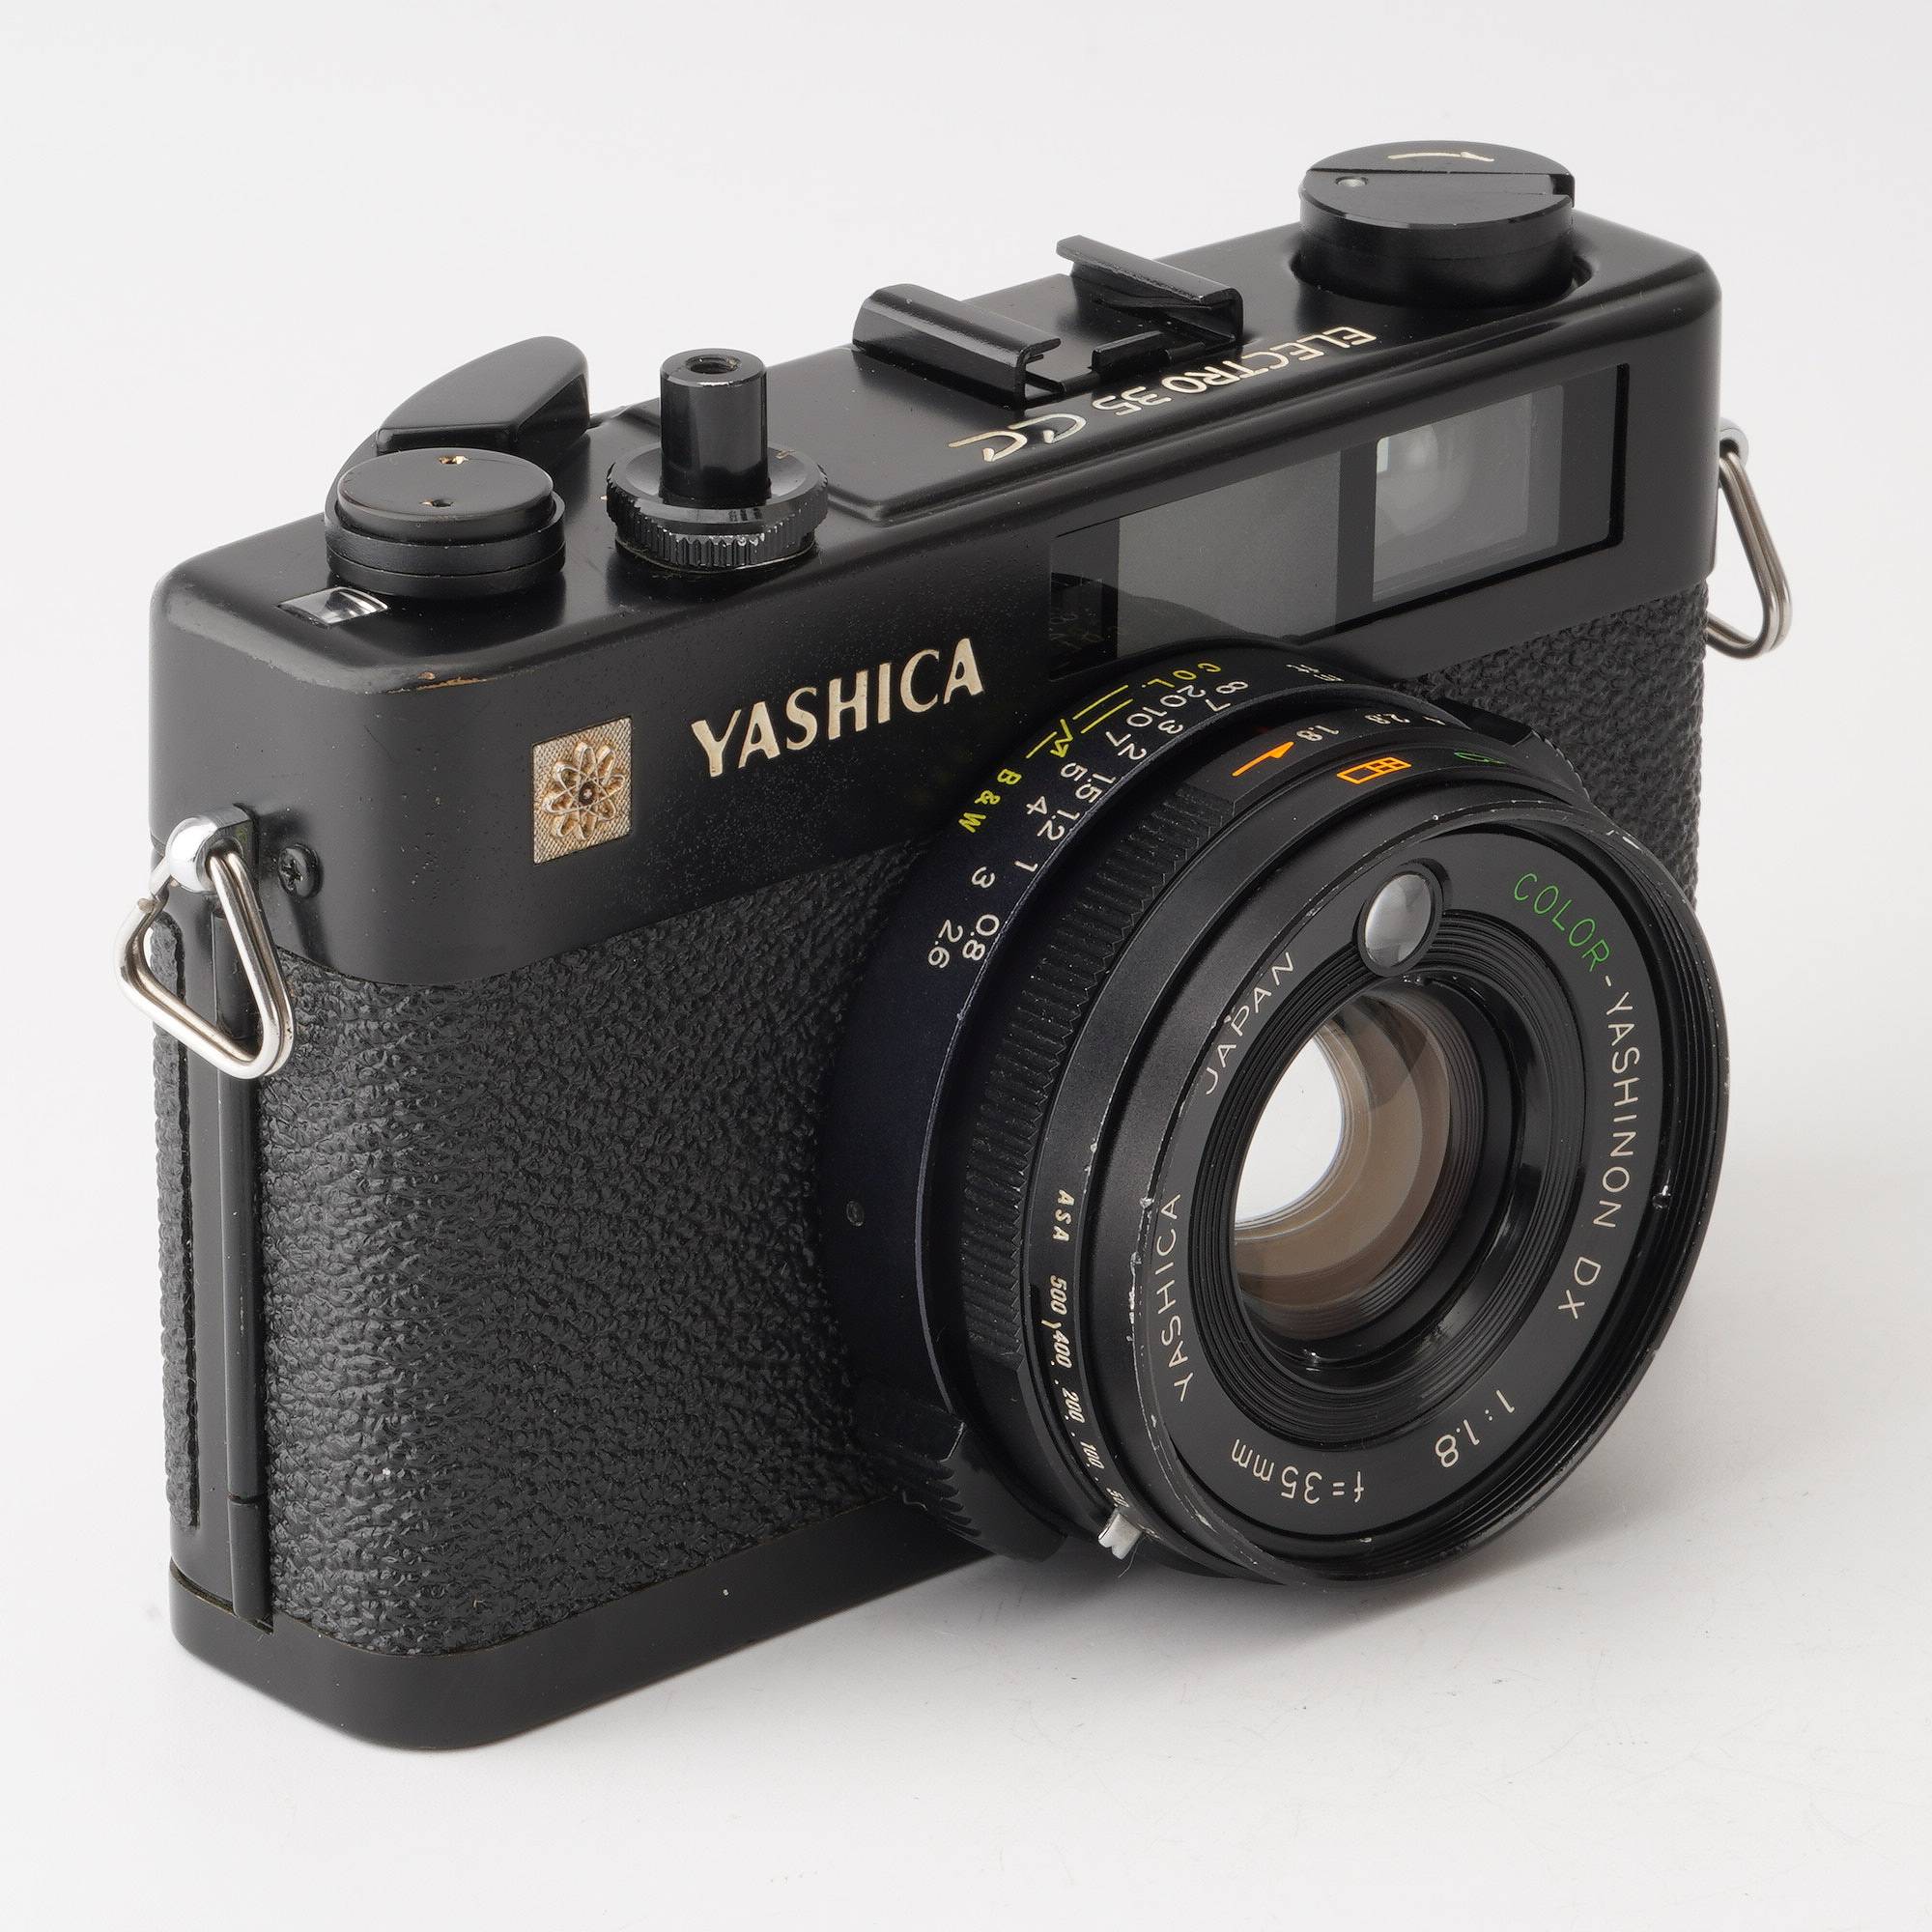 ヤシカ Yashica ELECTRO 35 CC / COLOR-YASHINON DX 35mm F1.8 